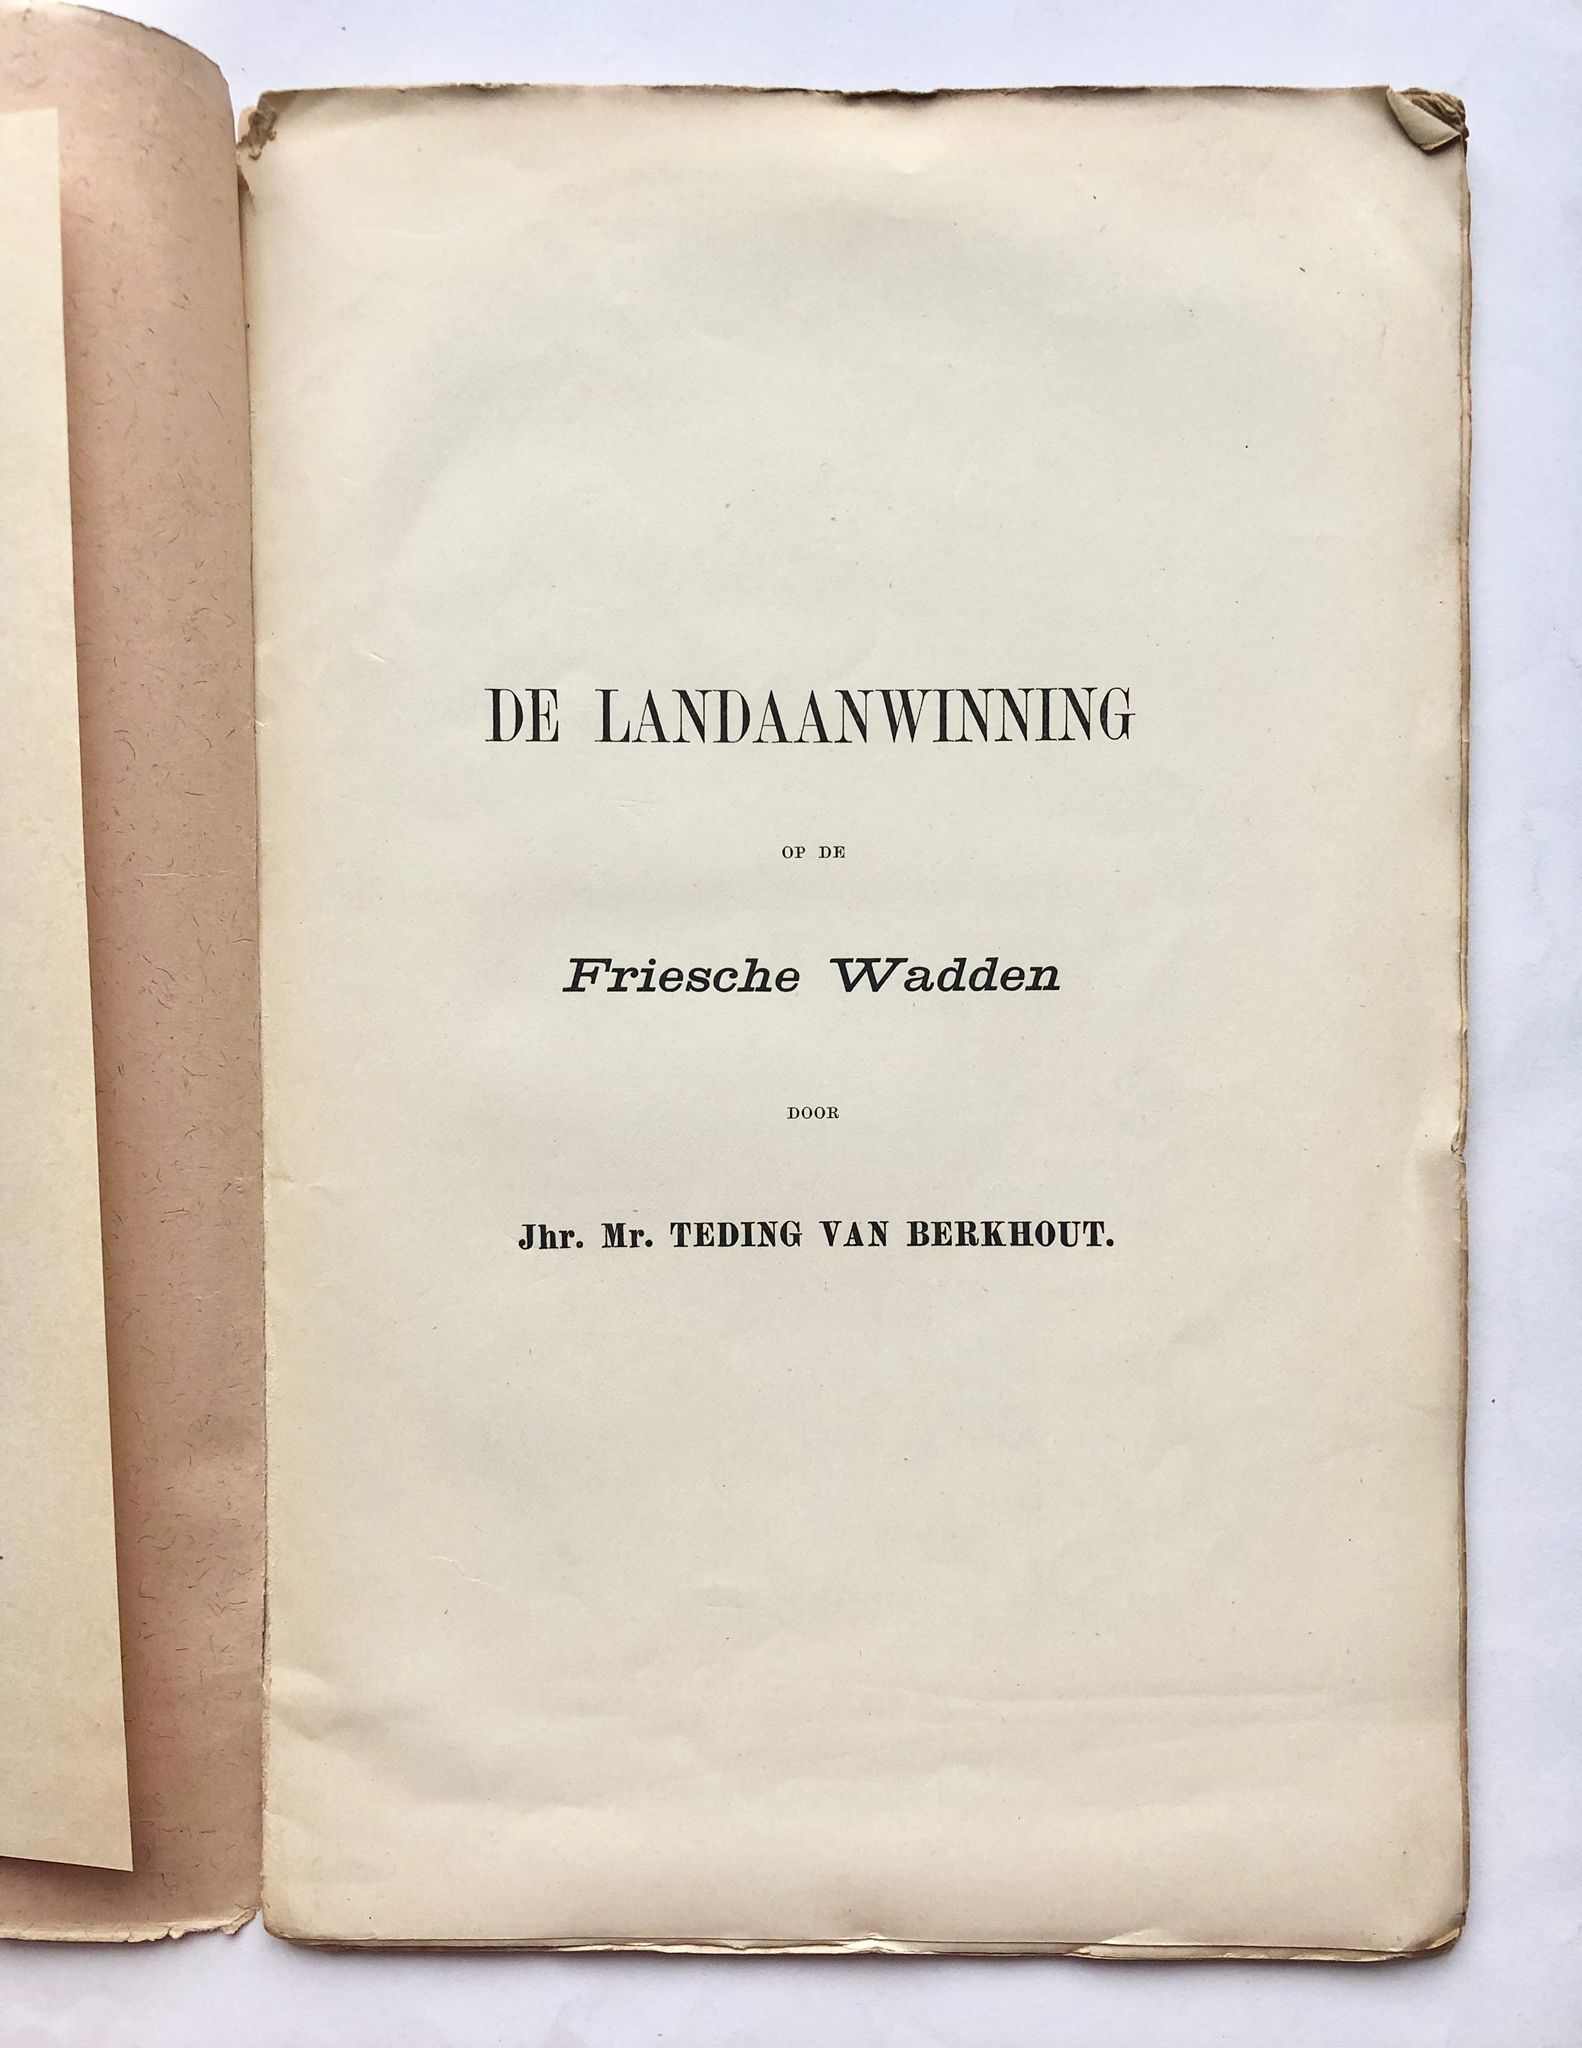 [First edition, Friesland] De landaanwinning op de Friesche wadden, [1891], NIet in den handel, with map of Friesche Wadden volgens de opnemingen van 1879.